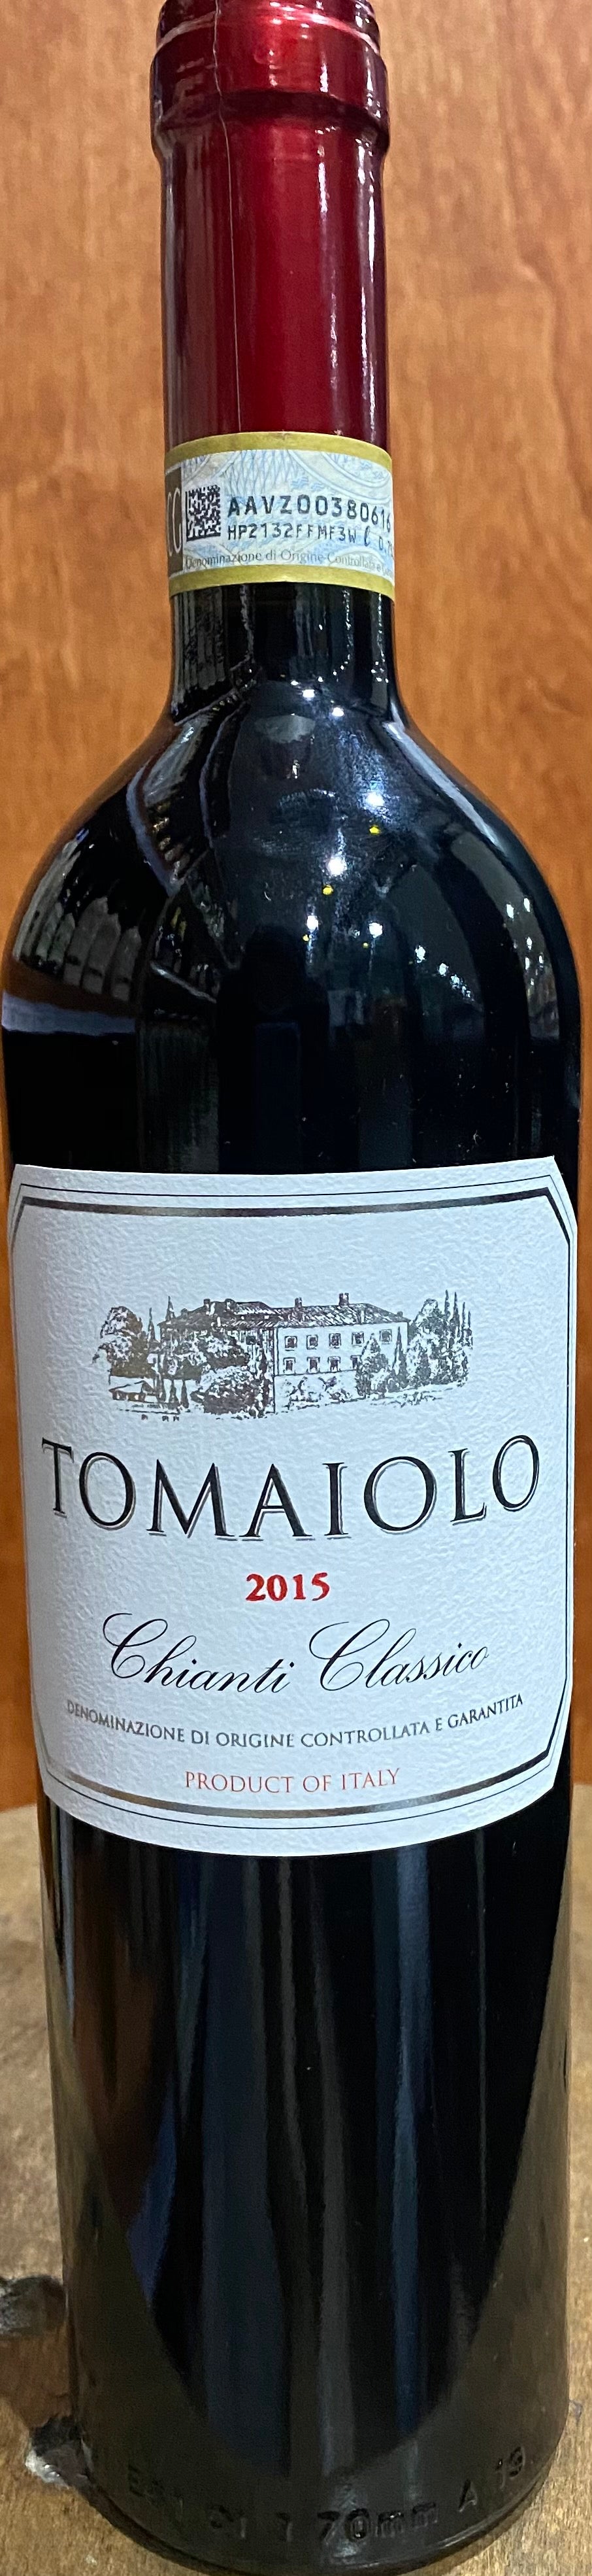 TOMAIOLO CHIANTI CLASSICO 2015 - Bk Wine Depot Corp